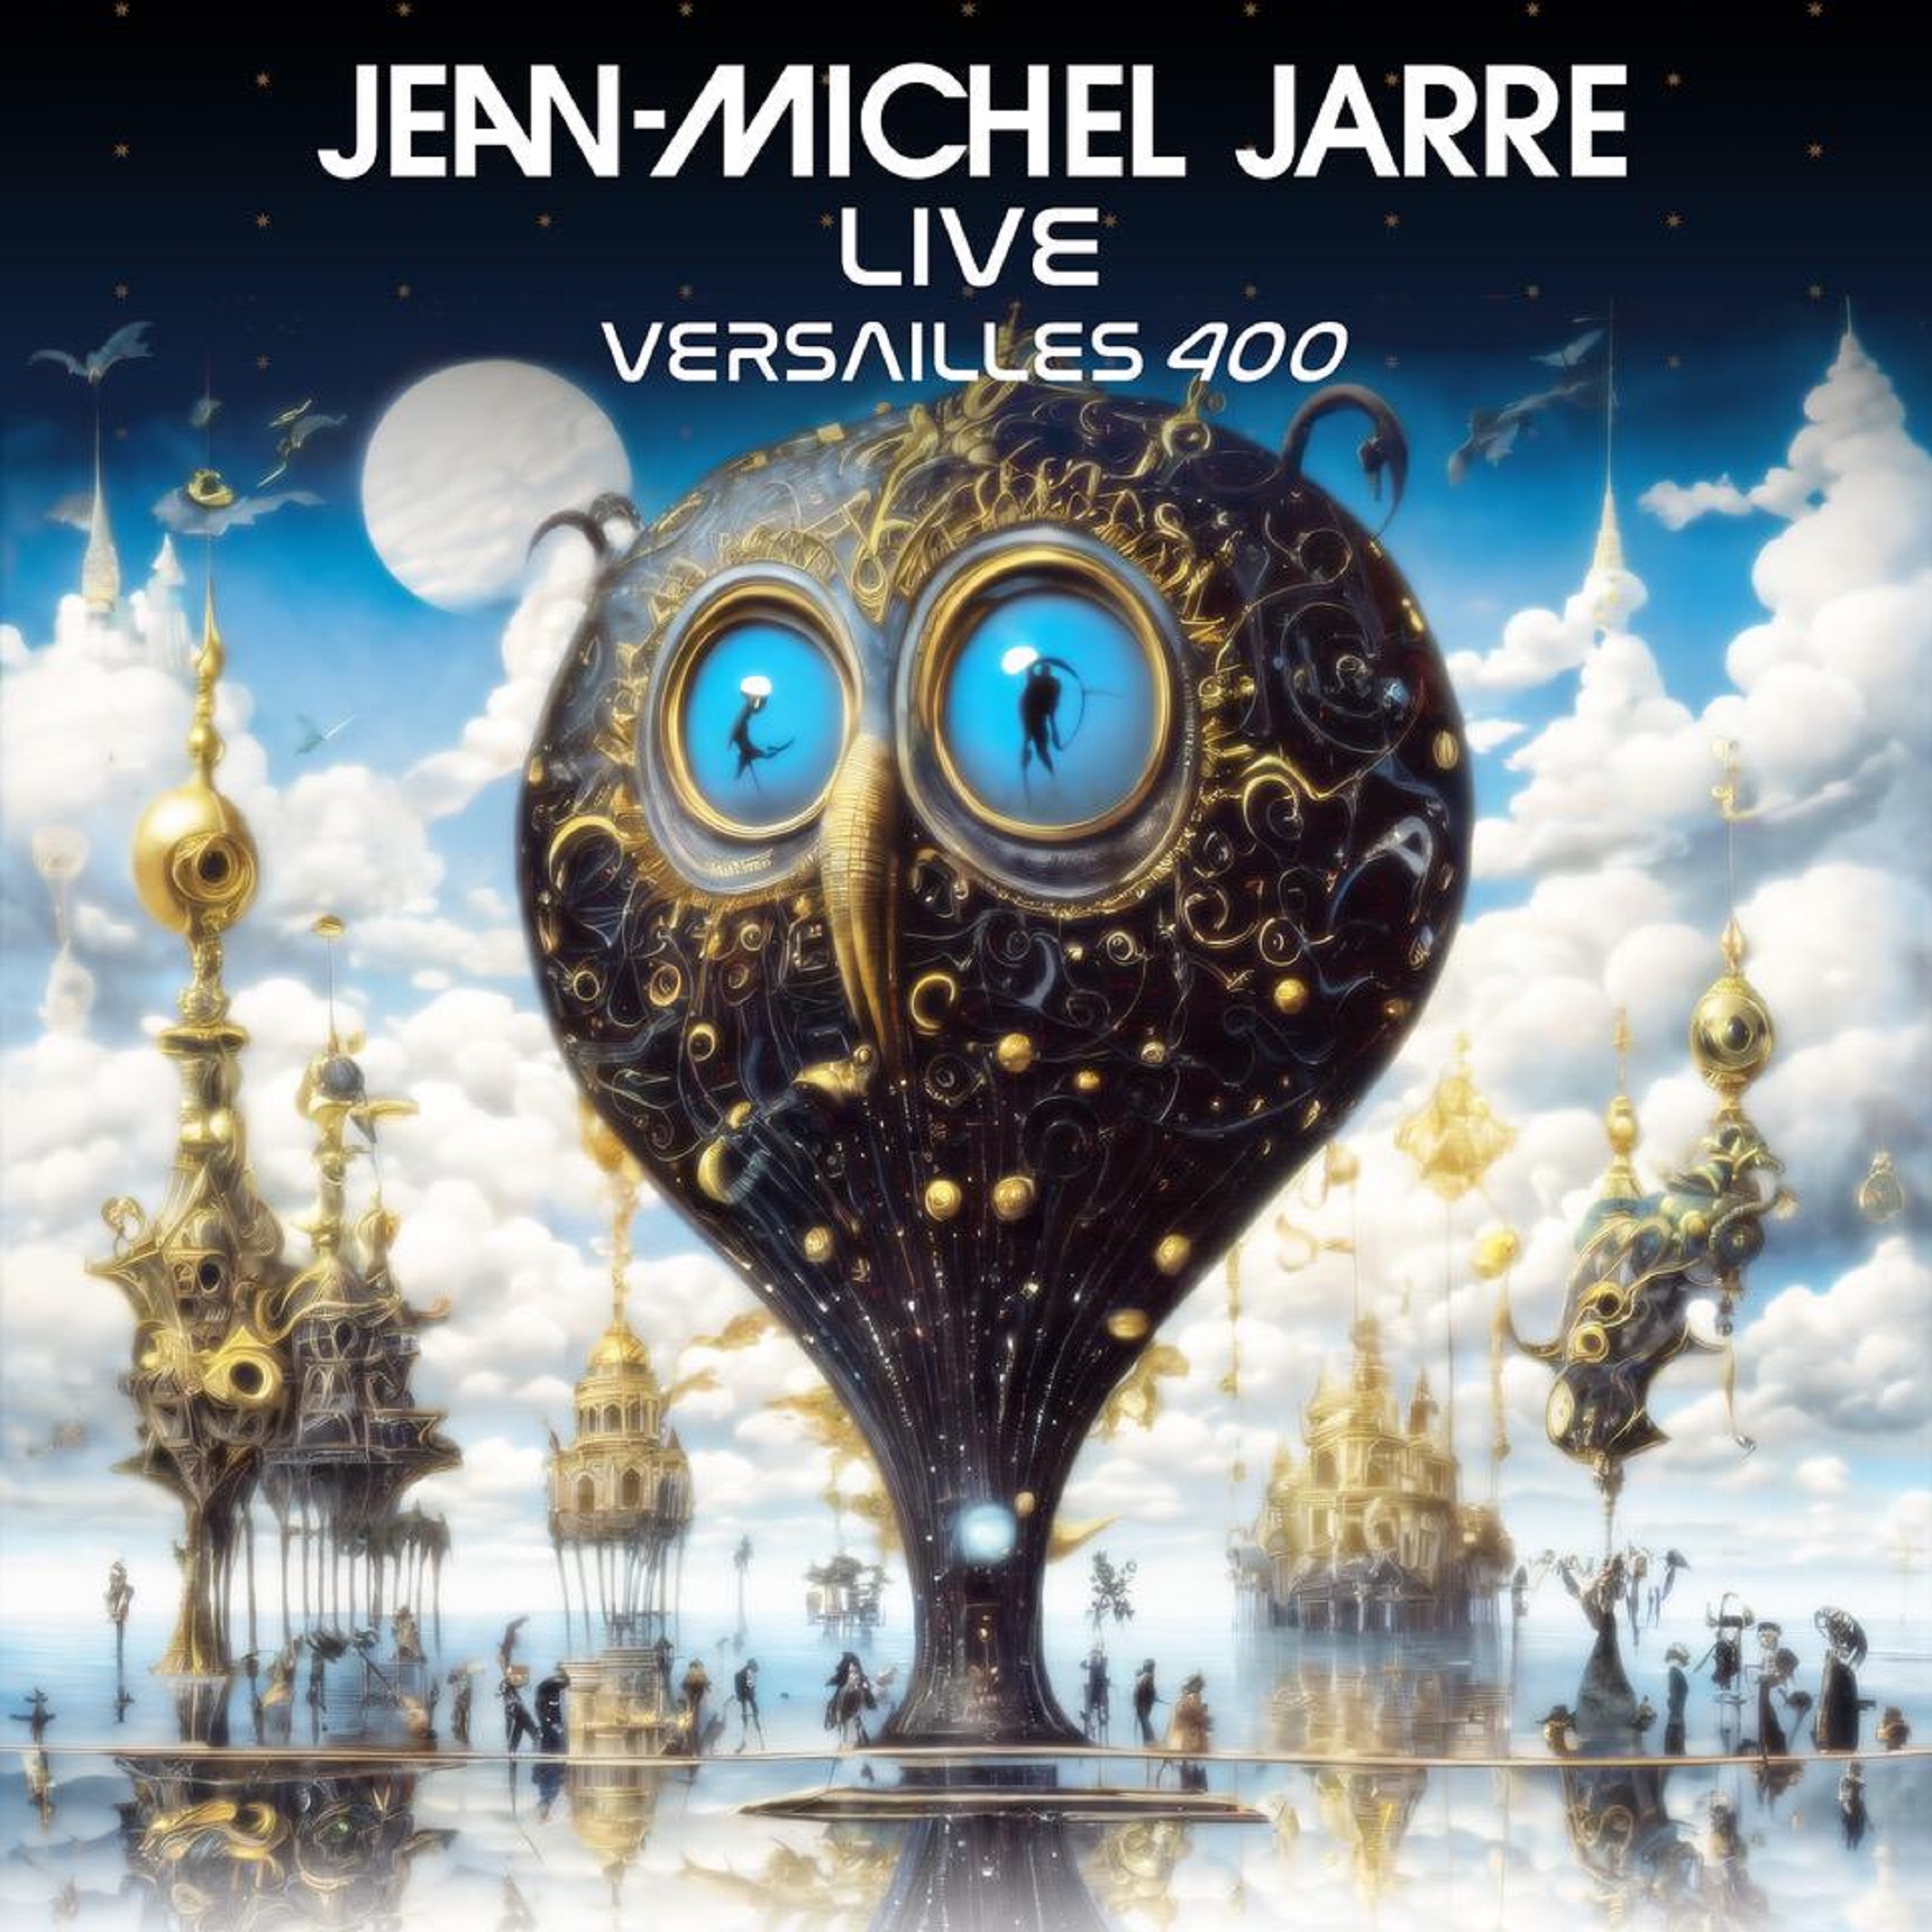 Jean-Michel Jarre Releases 'Versailles 400' A Live Digital Album & Mixed-Reality Concert Film